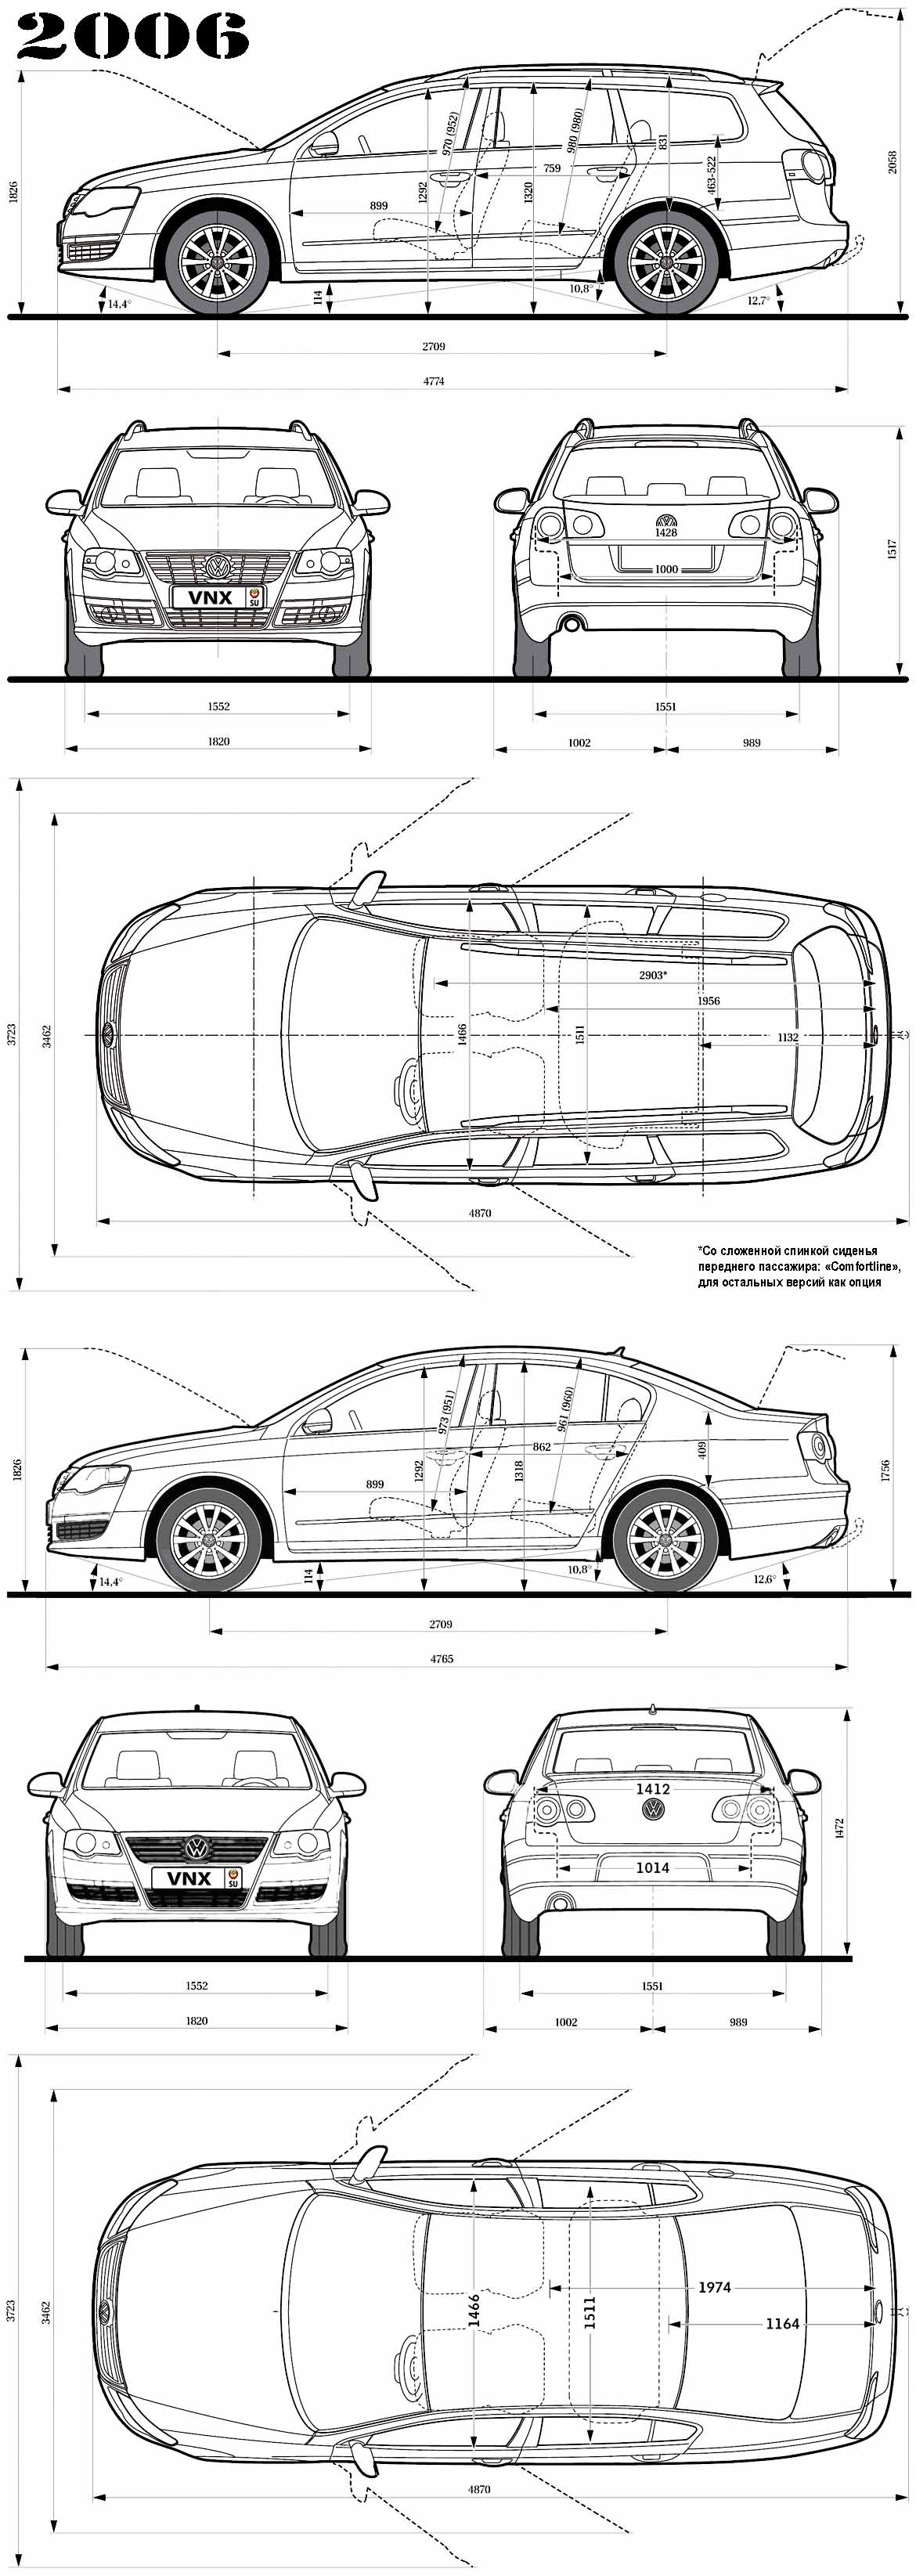 Габаритные размеры Фольксваген Пассат Б6 универсал и седан (dimensions VW Passat B6 variant/limousine)